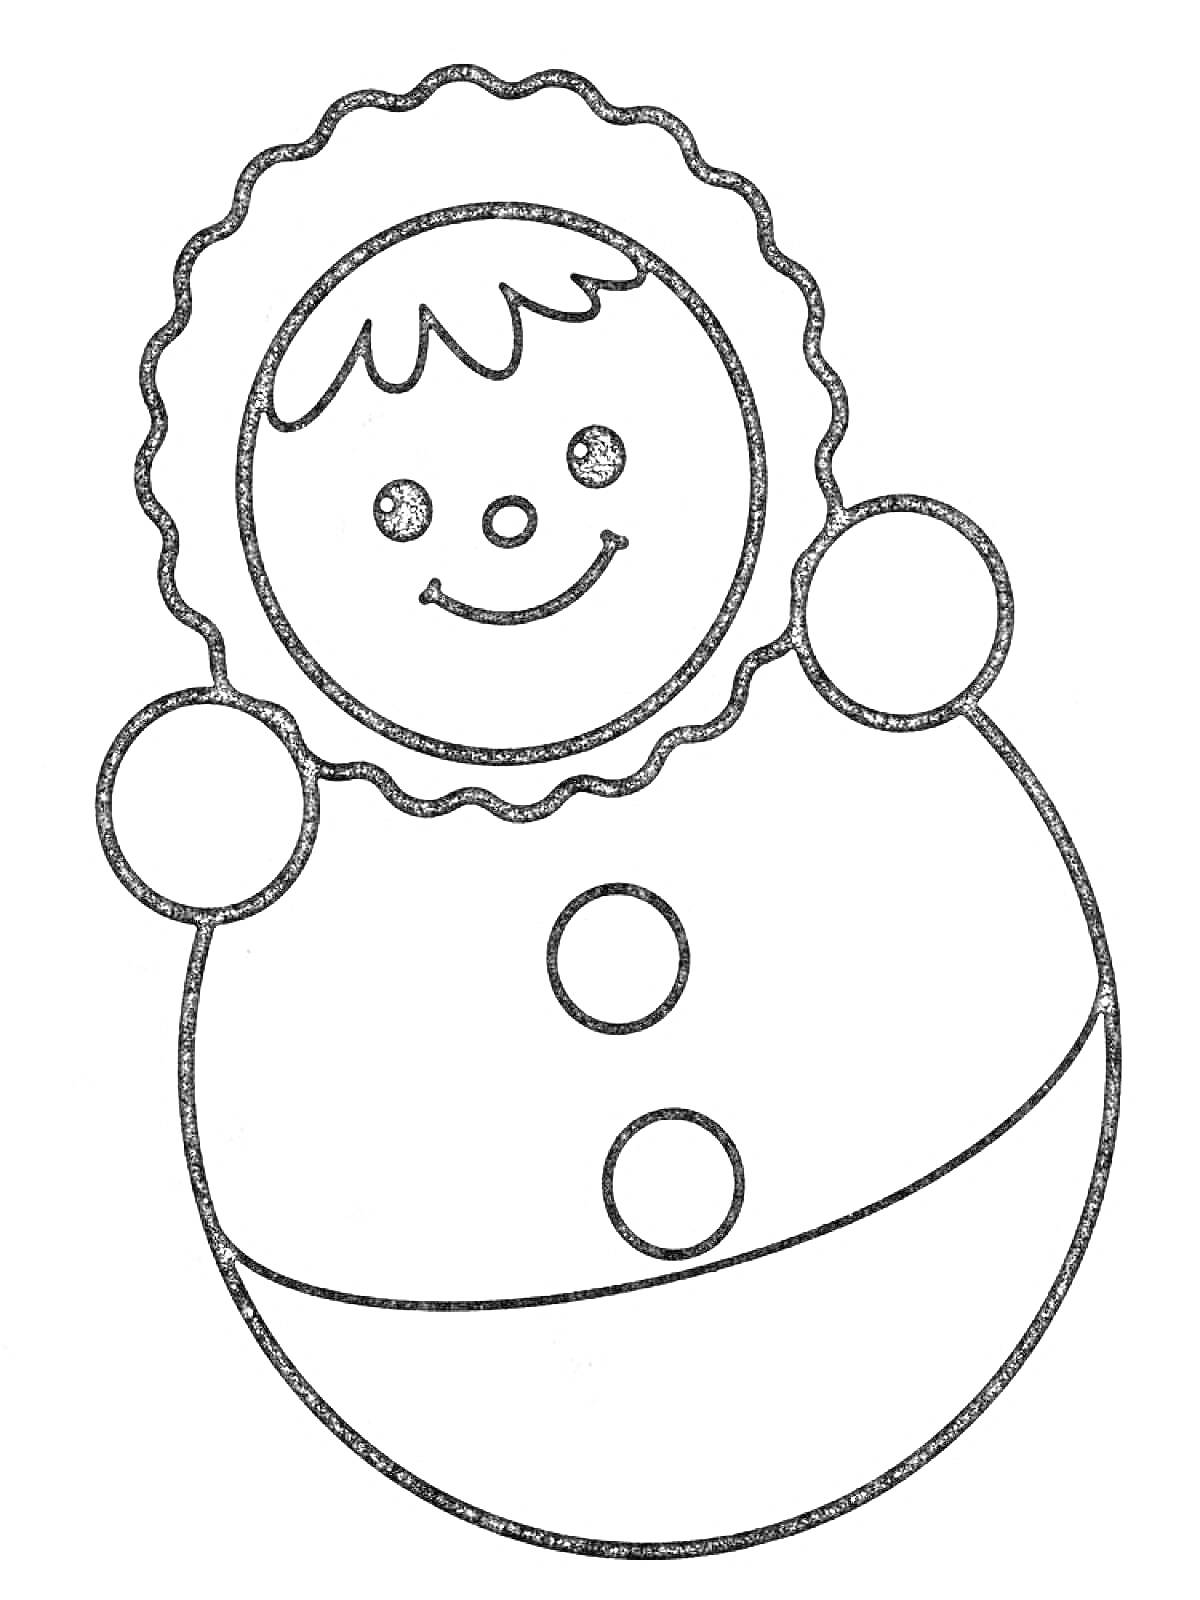 Раскраска Неваляшка с улыбающимся лицом, плавником шапочкой, двумя кнопками на теле и округлым основанием.